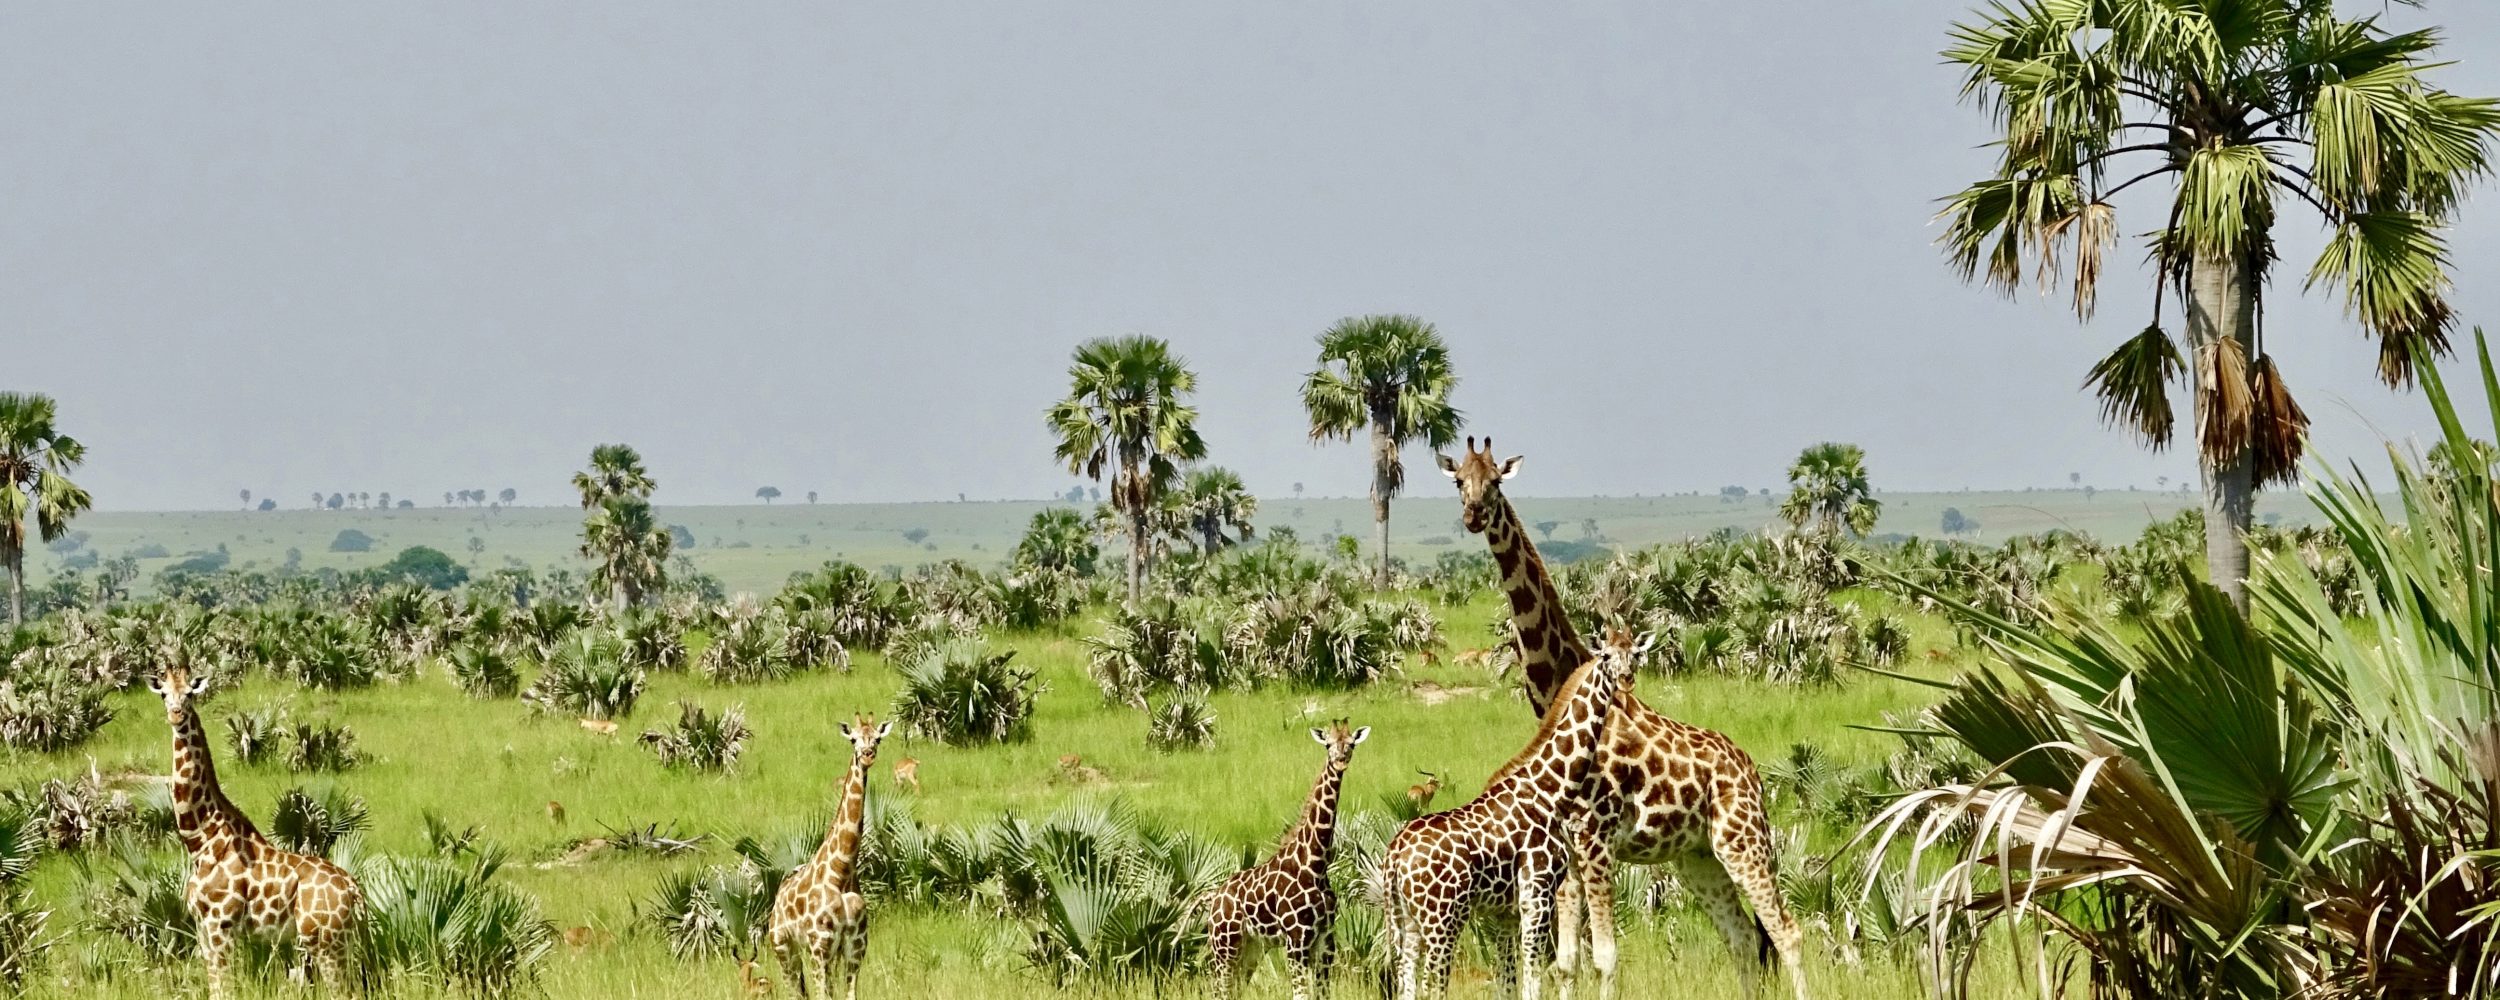 murchison nationalpark uganda giraff